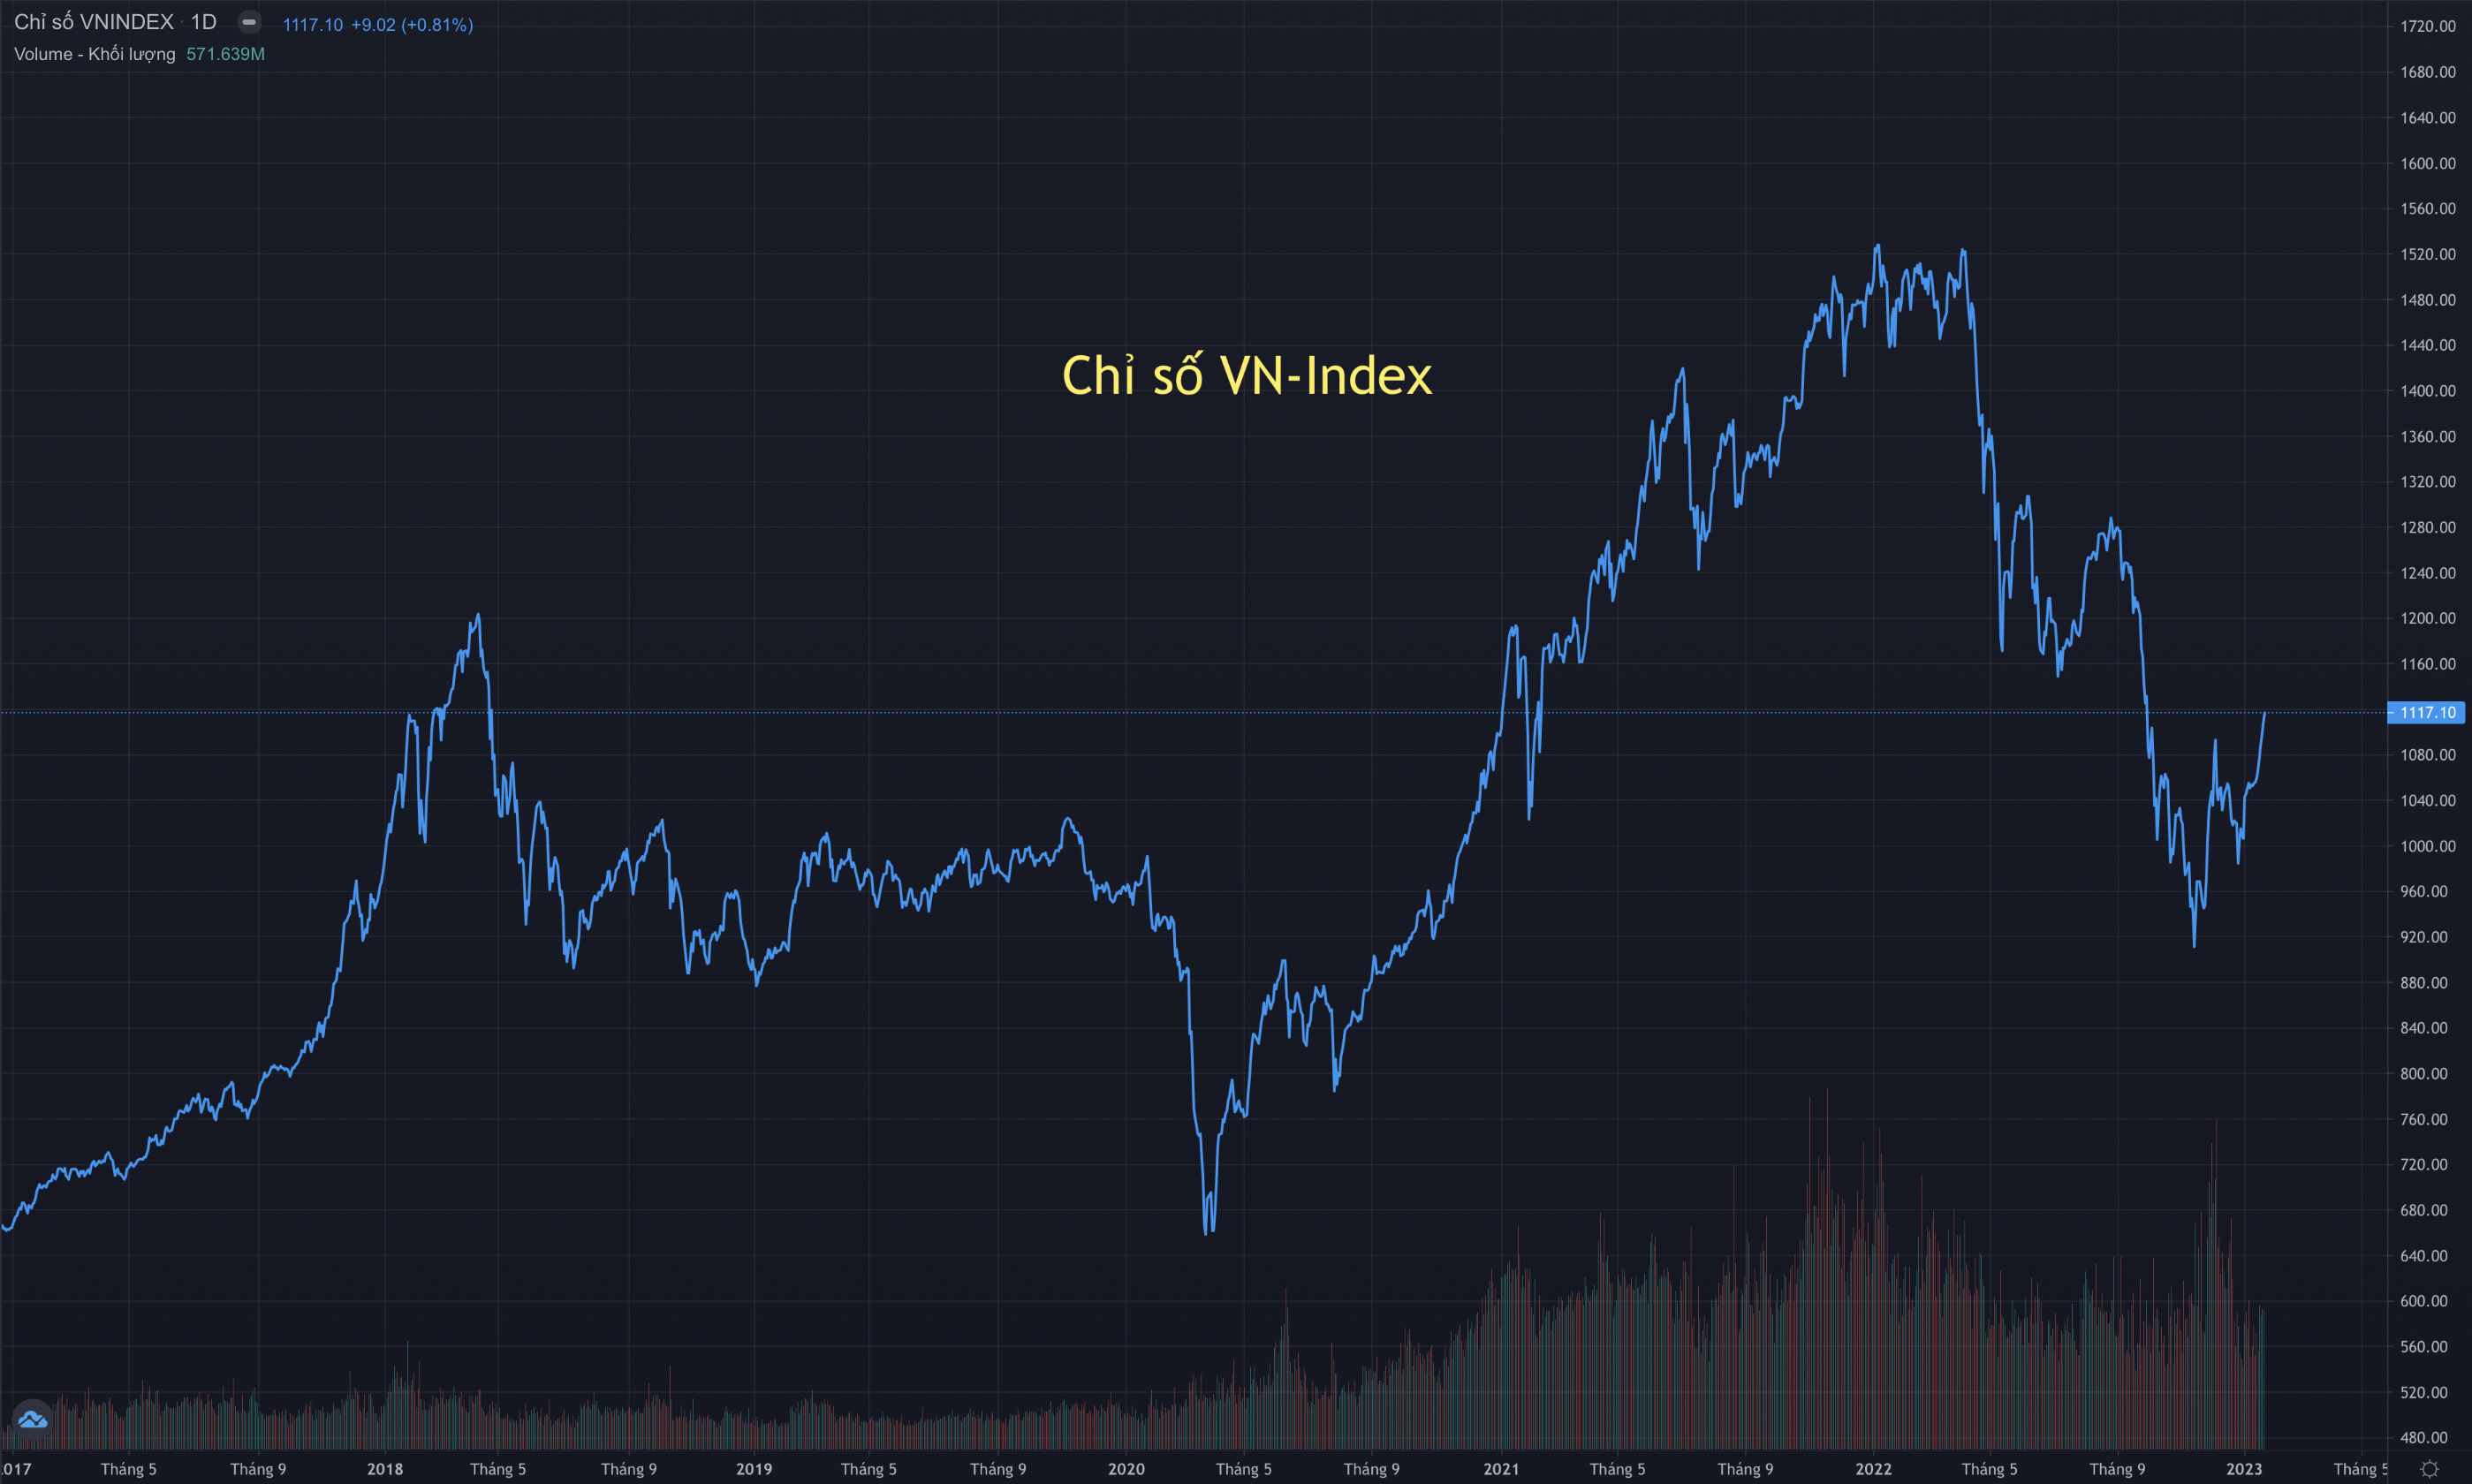 Diễn biến của chỉ số chứng khoán VN-Index trong 5 năm qua. Ảnh: tradingview